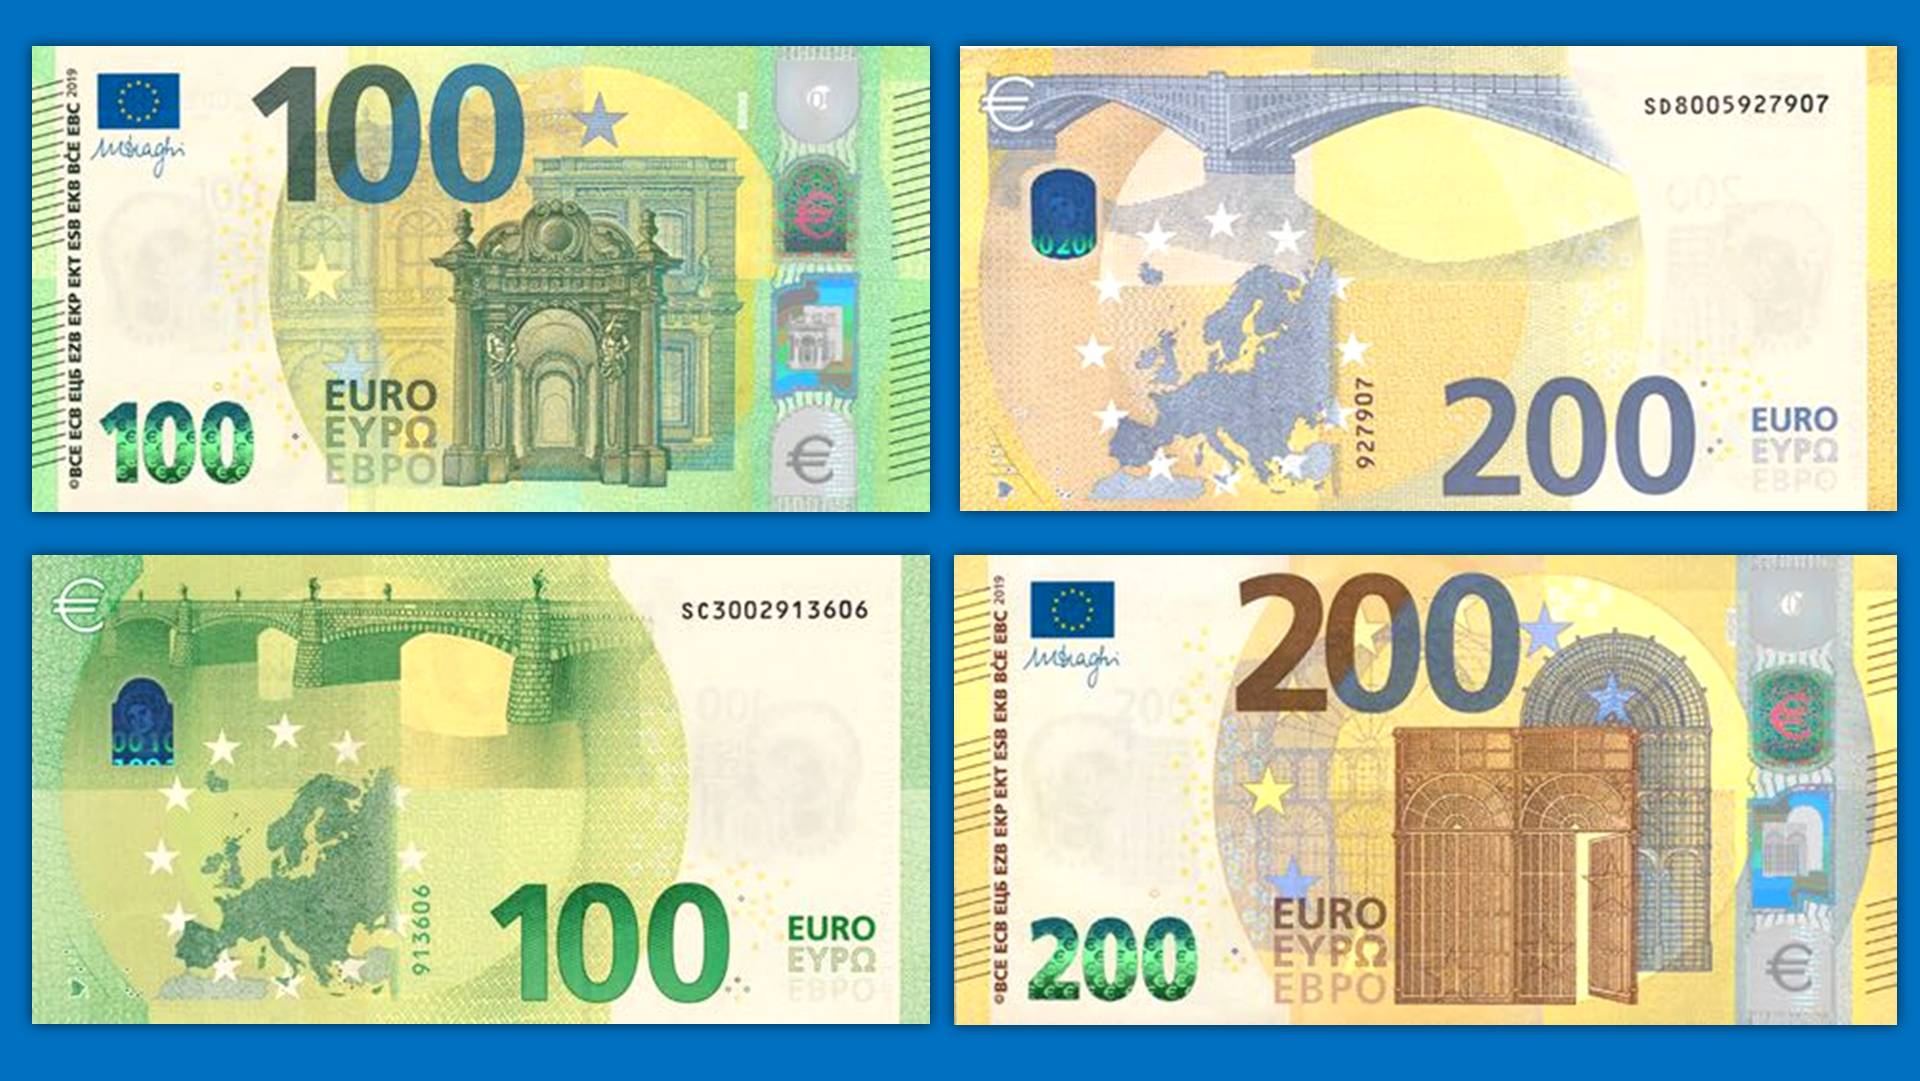 Евро старые купюры. Евро банкноты номинал 200. Банкноты евро нового образца 200. Банкноты евро нового образца 100 евро. Купюра 100 евро нового образца.